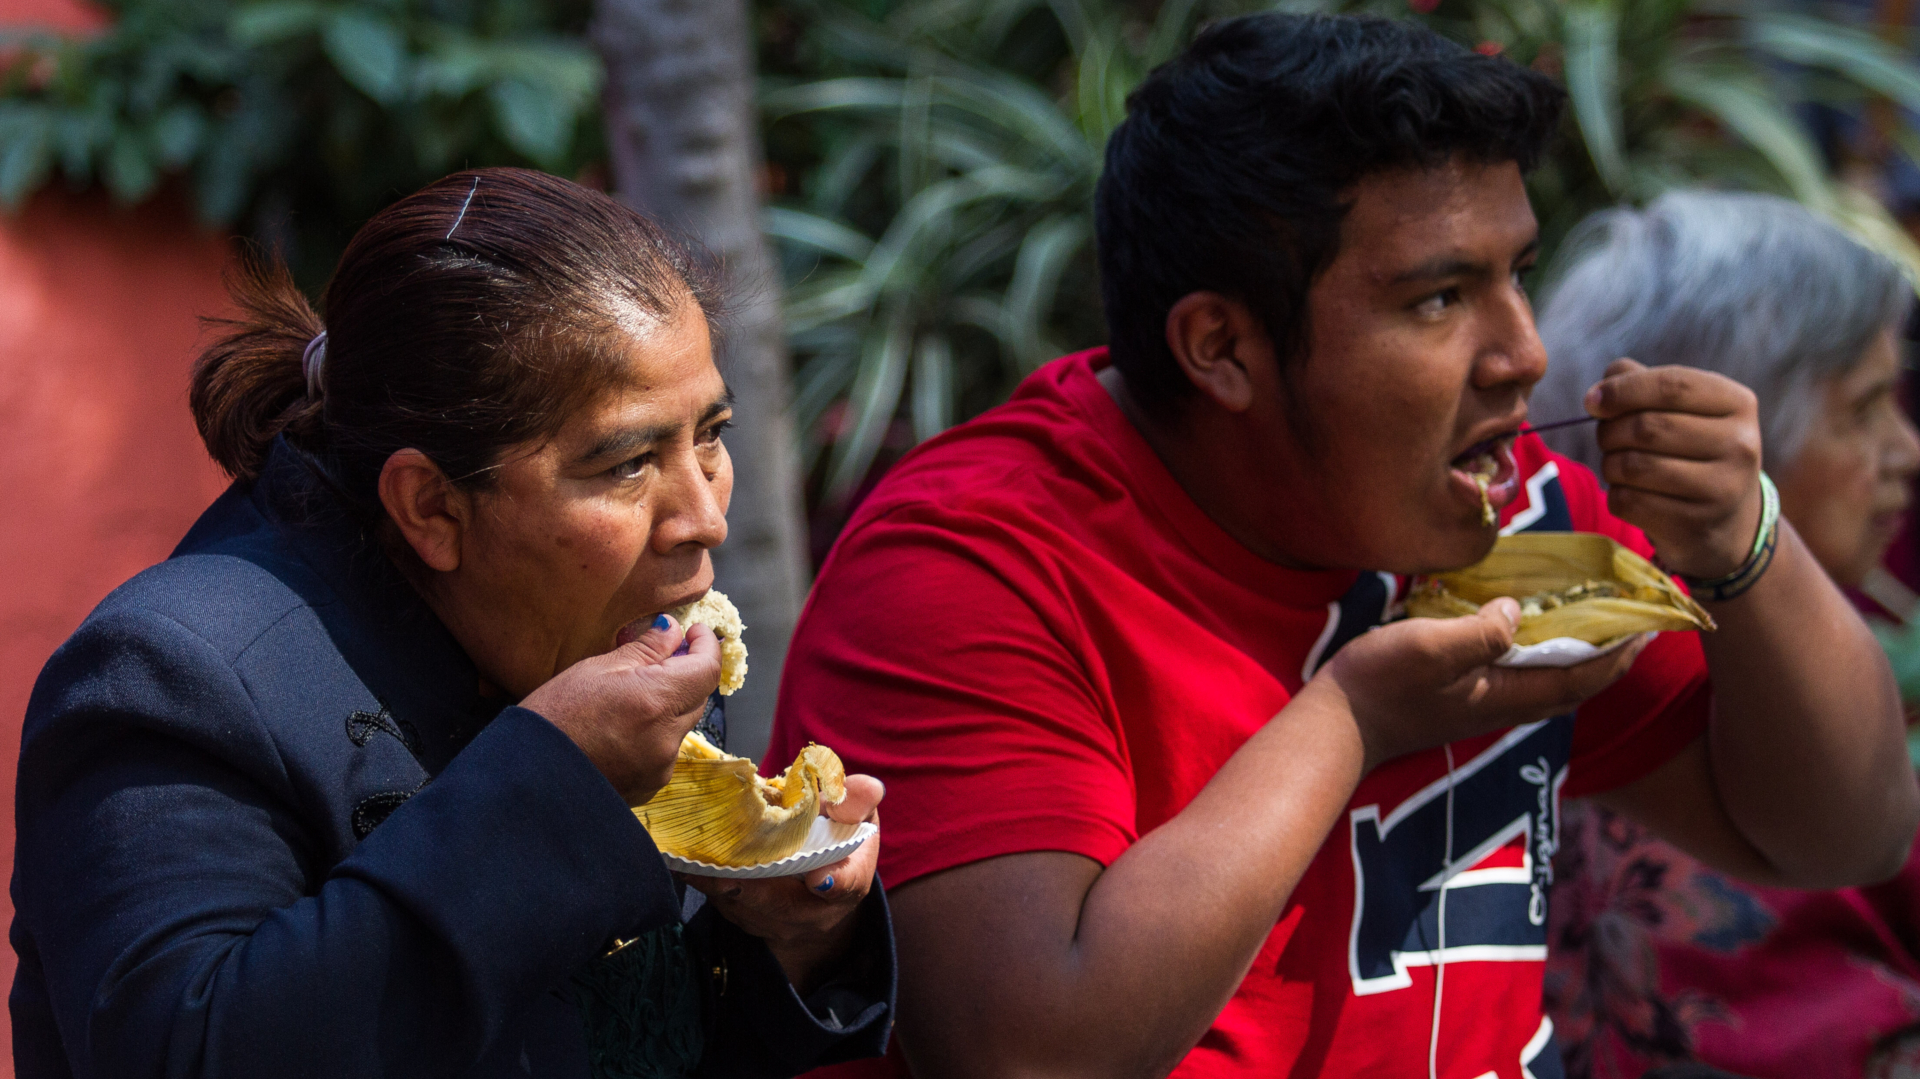  Los tamales son un alimento muy solicitado en está época del año, en que se celebra el día de la Candelaria (Foto: Cuartoscuro)